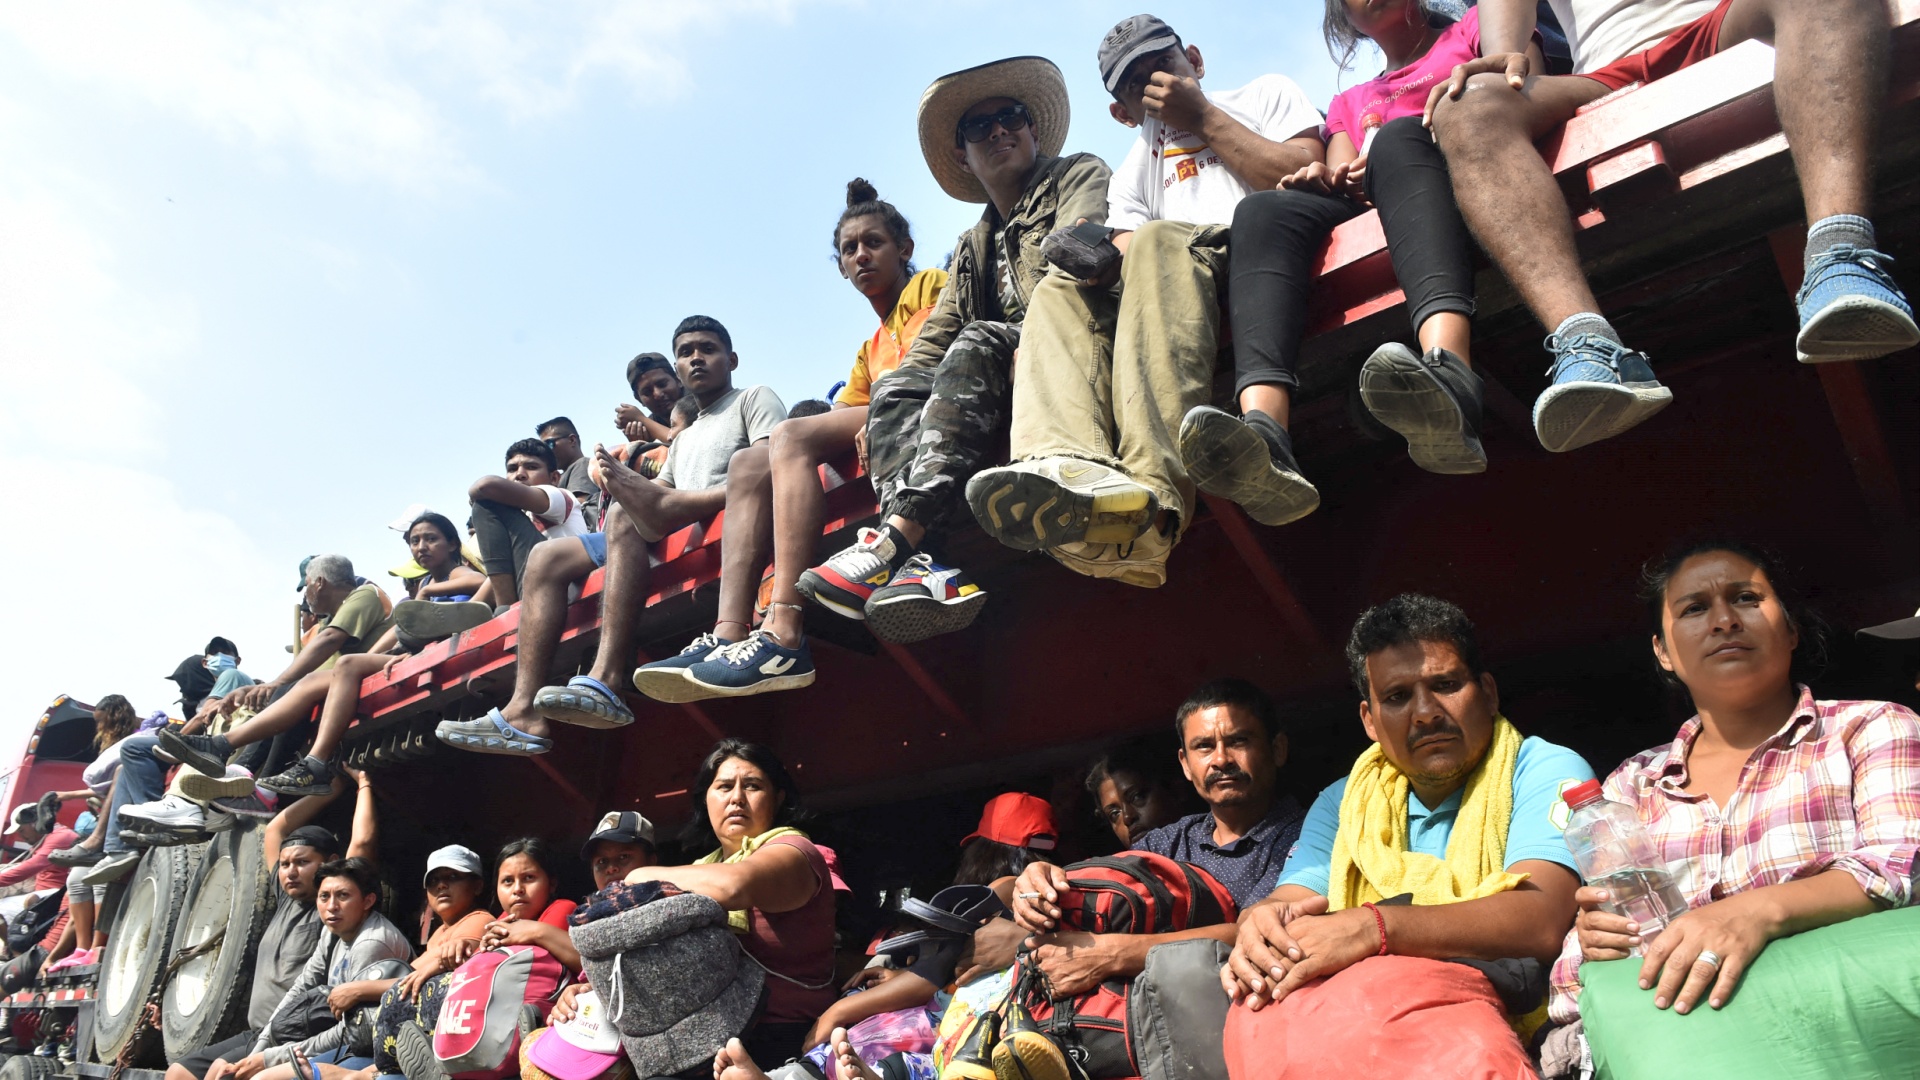 Каравану из 5000 мигрантов разрешили легально идти через Мексику в США